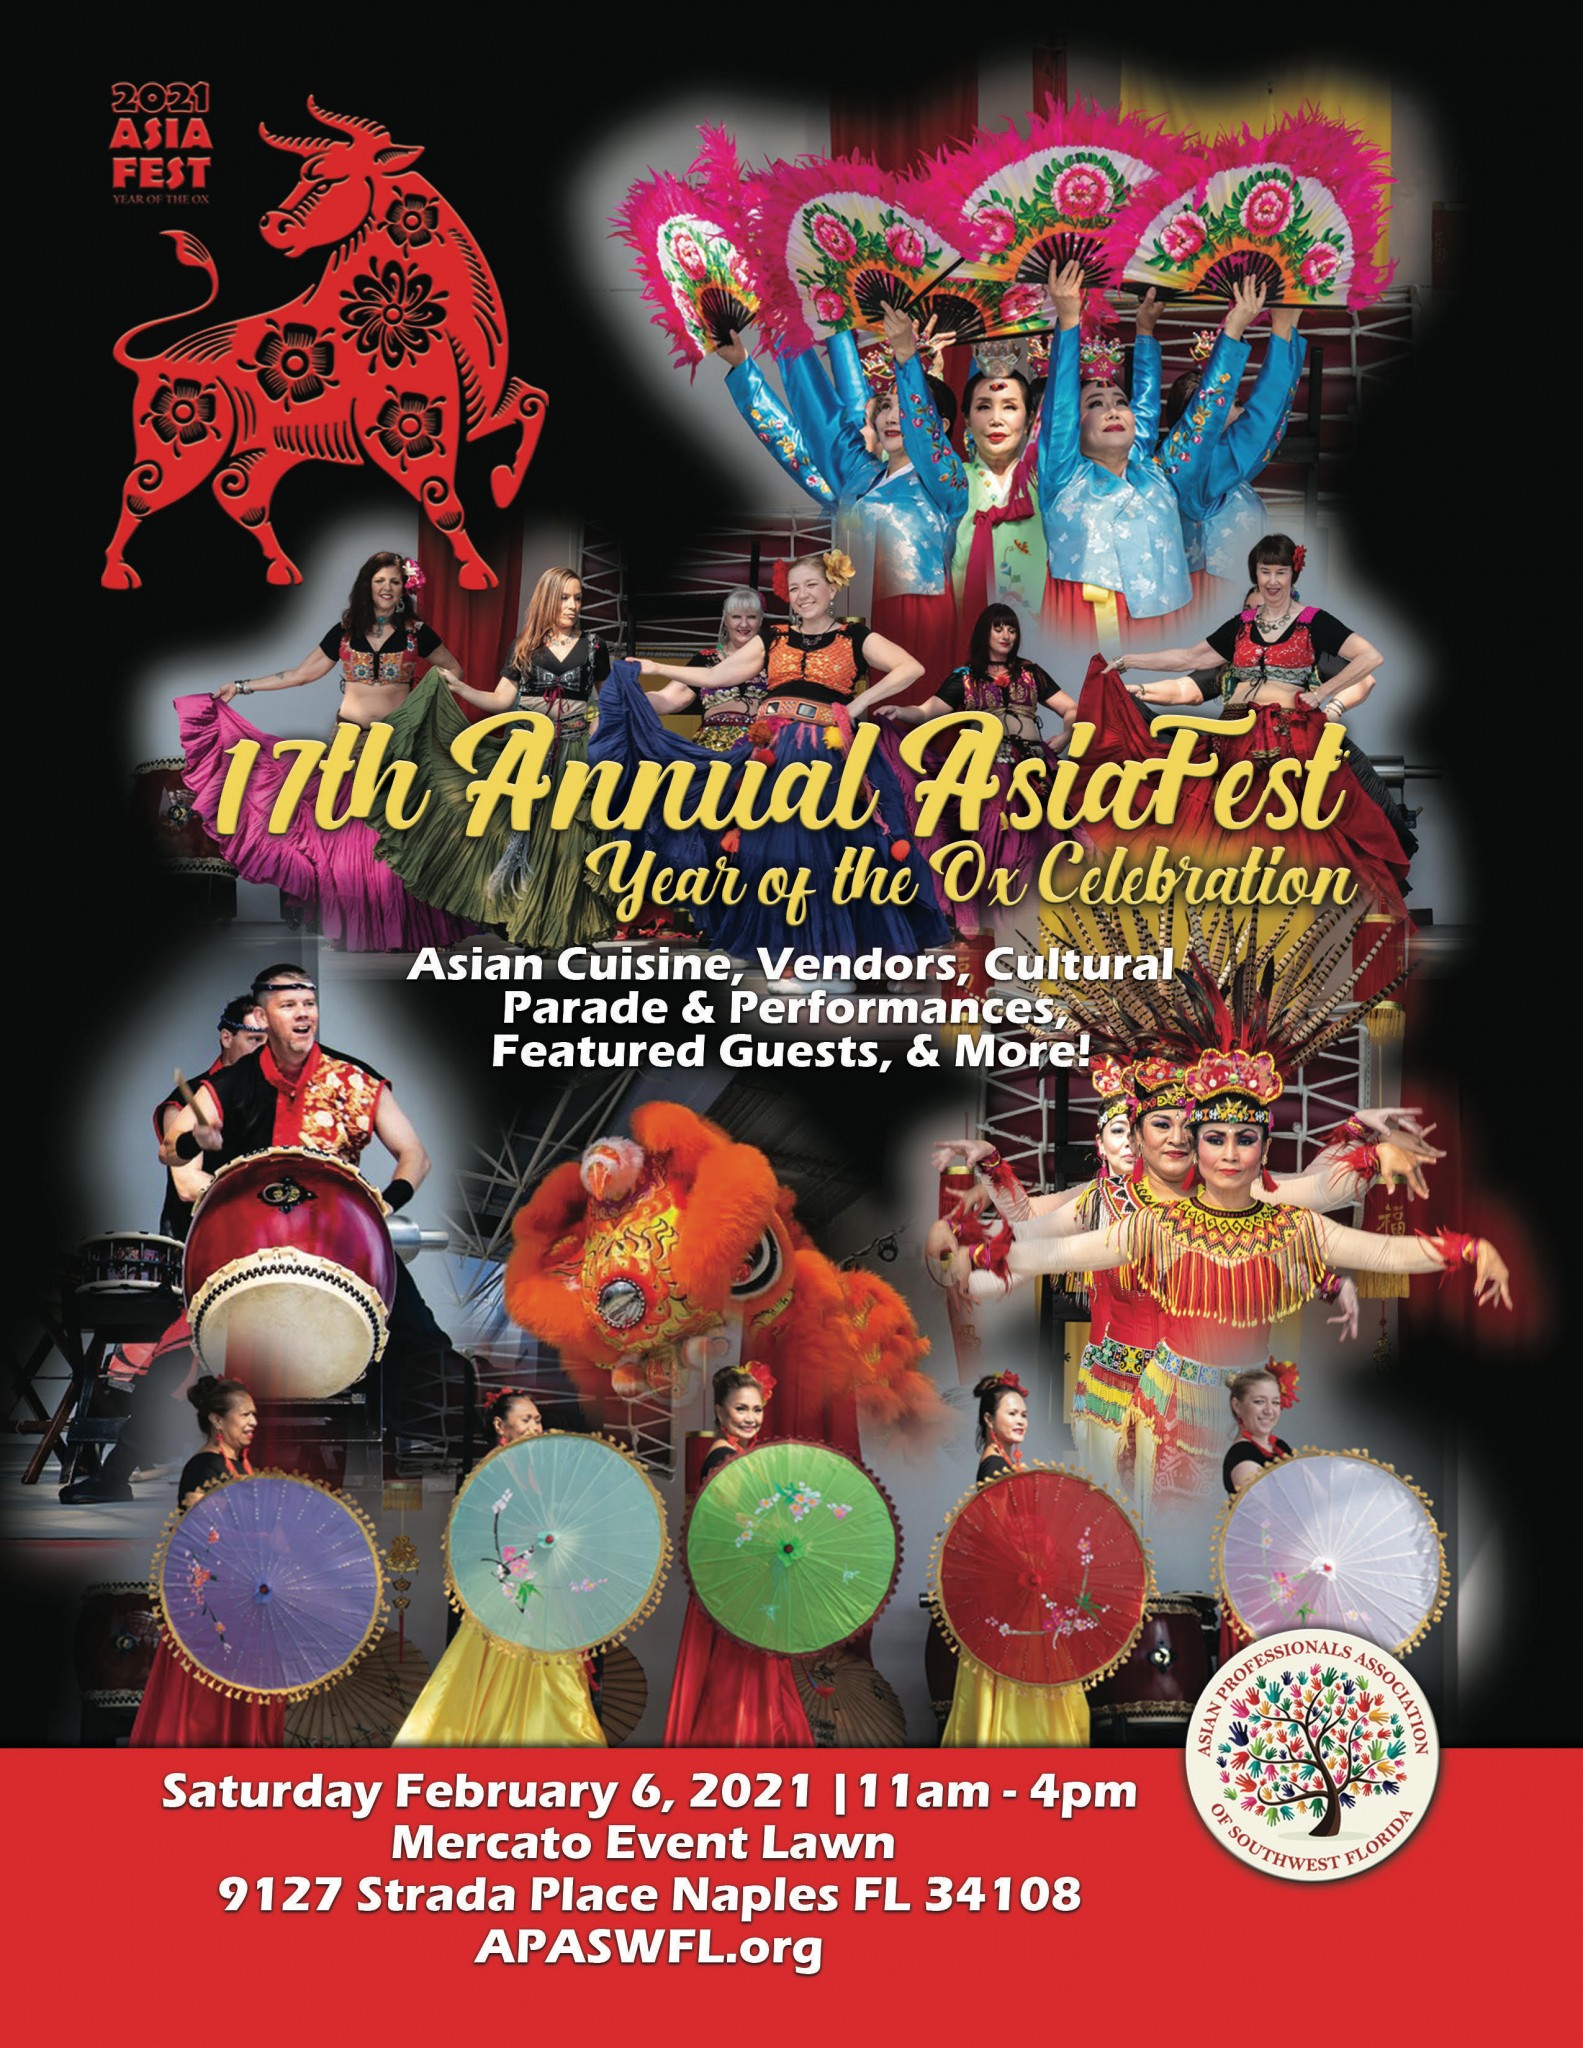 2021 Asia Fest in Naples, Florida